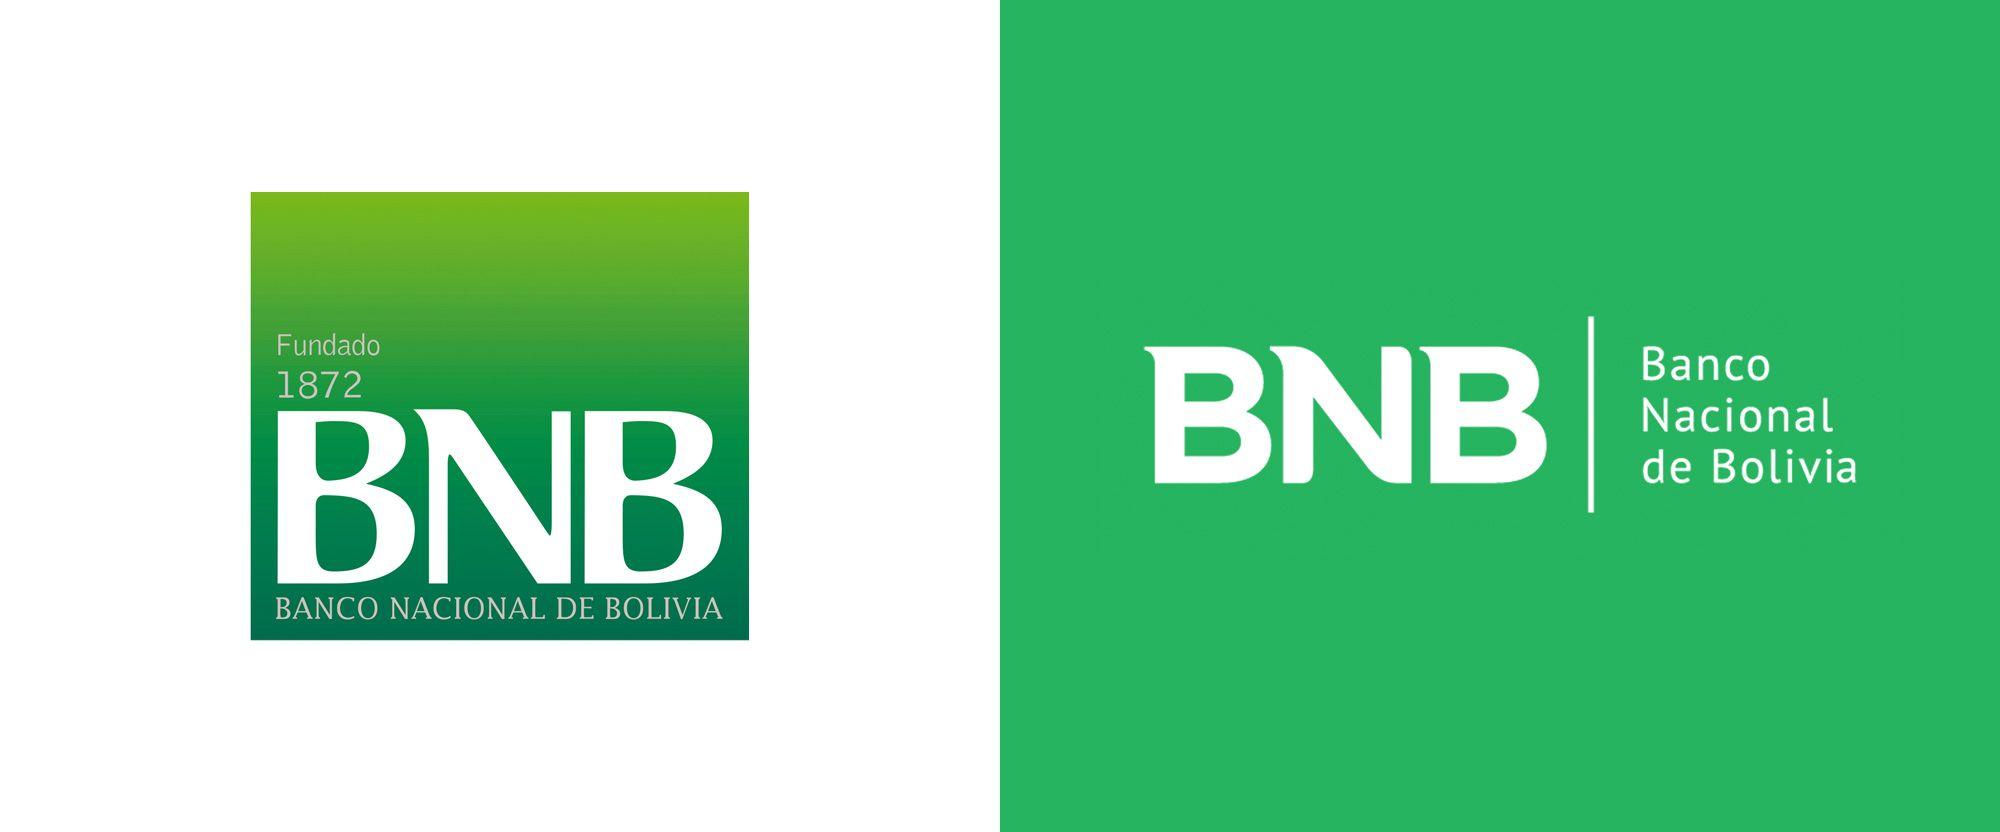 Bolivia Logo - Brand New: New Logo for Banco Nacional de Bolivia